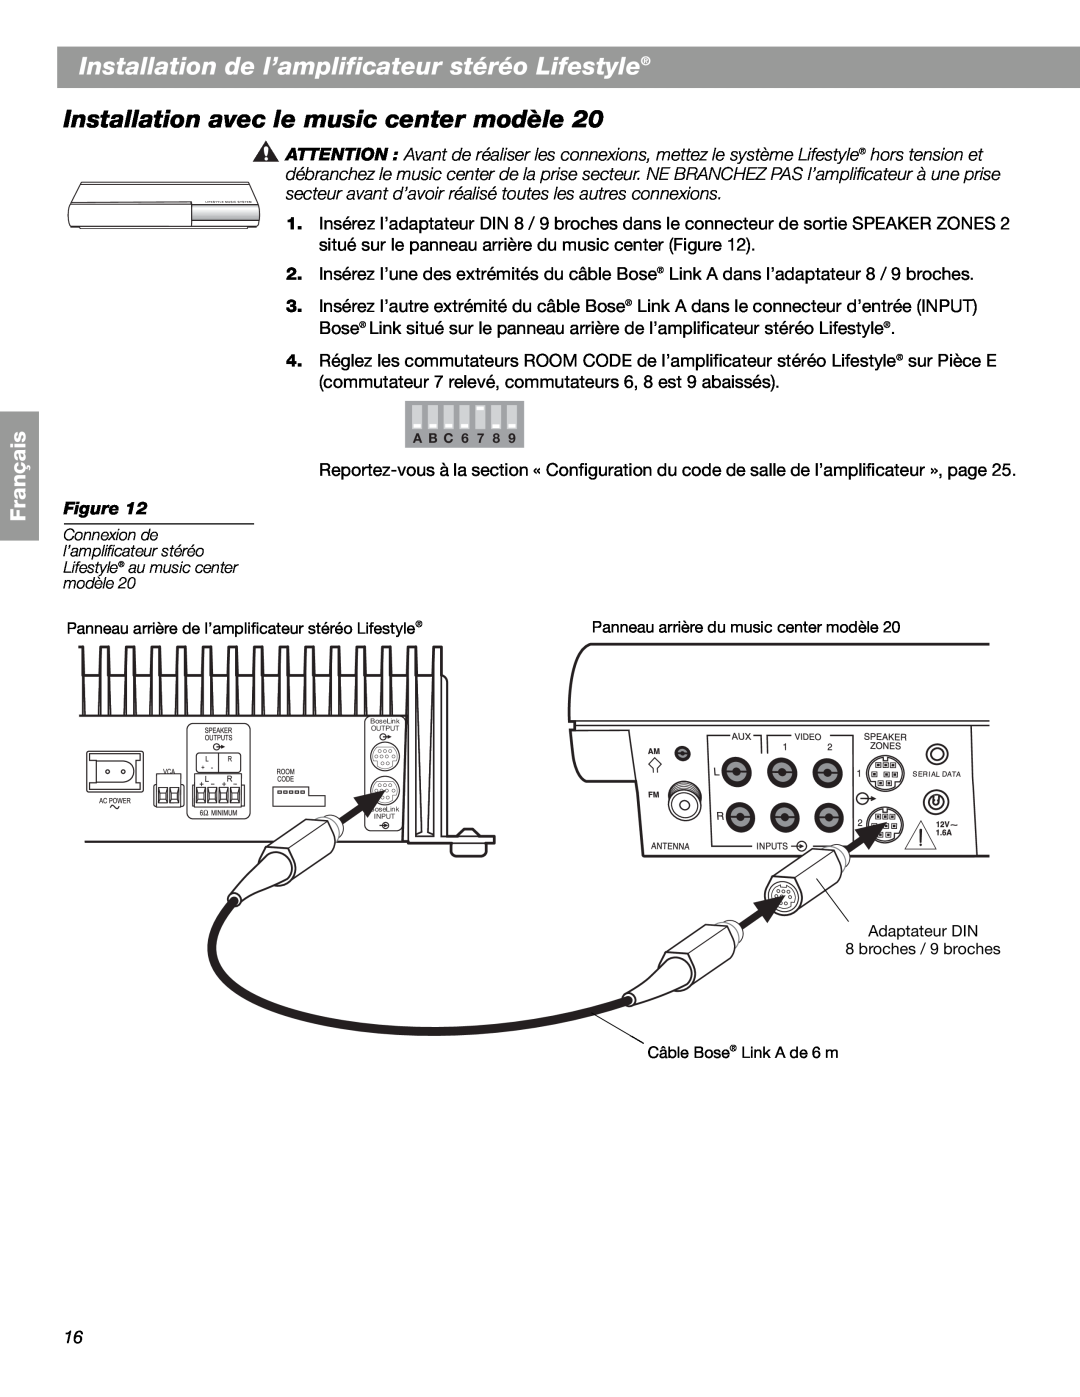 Bose SA-2, SA-3 manual Installation avec le music center modèle, Installation de l’amplificateur stéréo Lifestyle, Français 